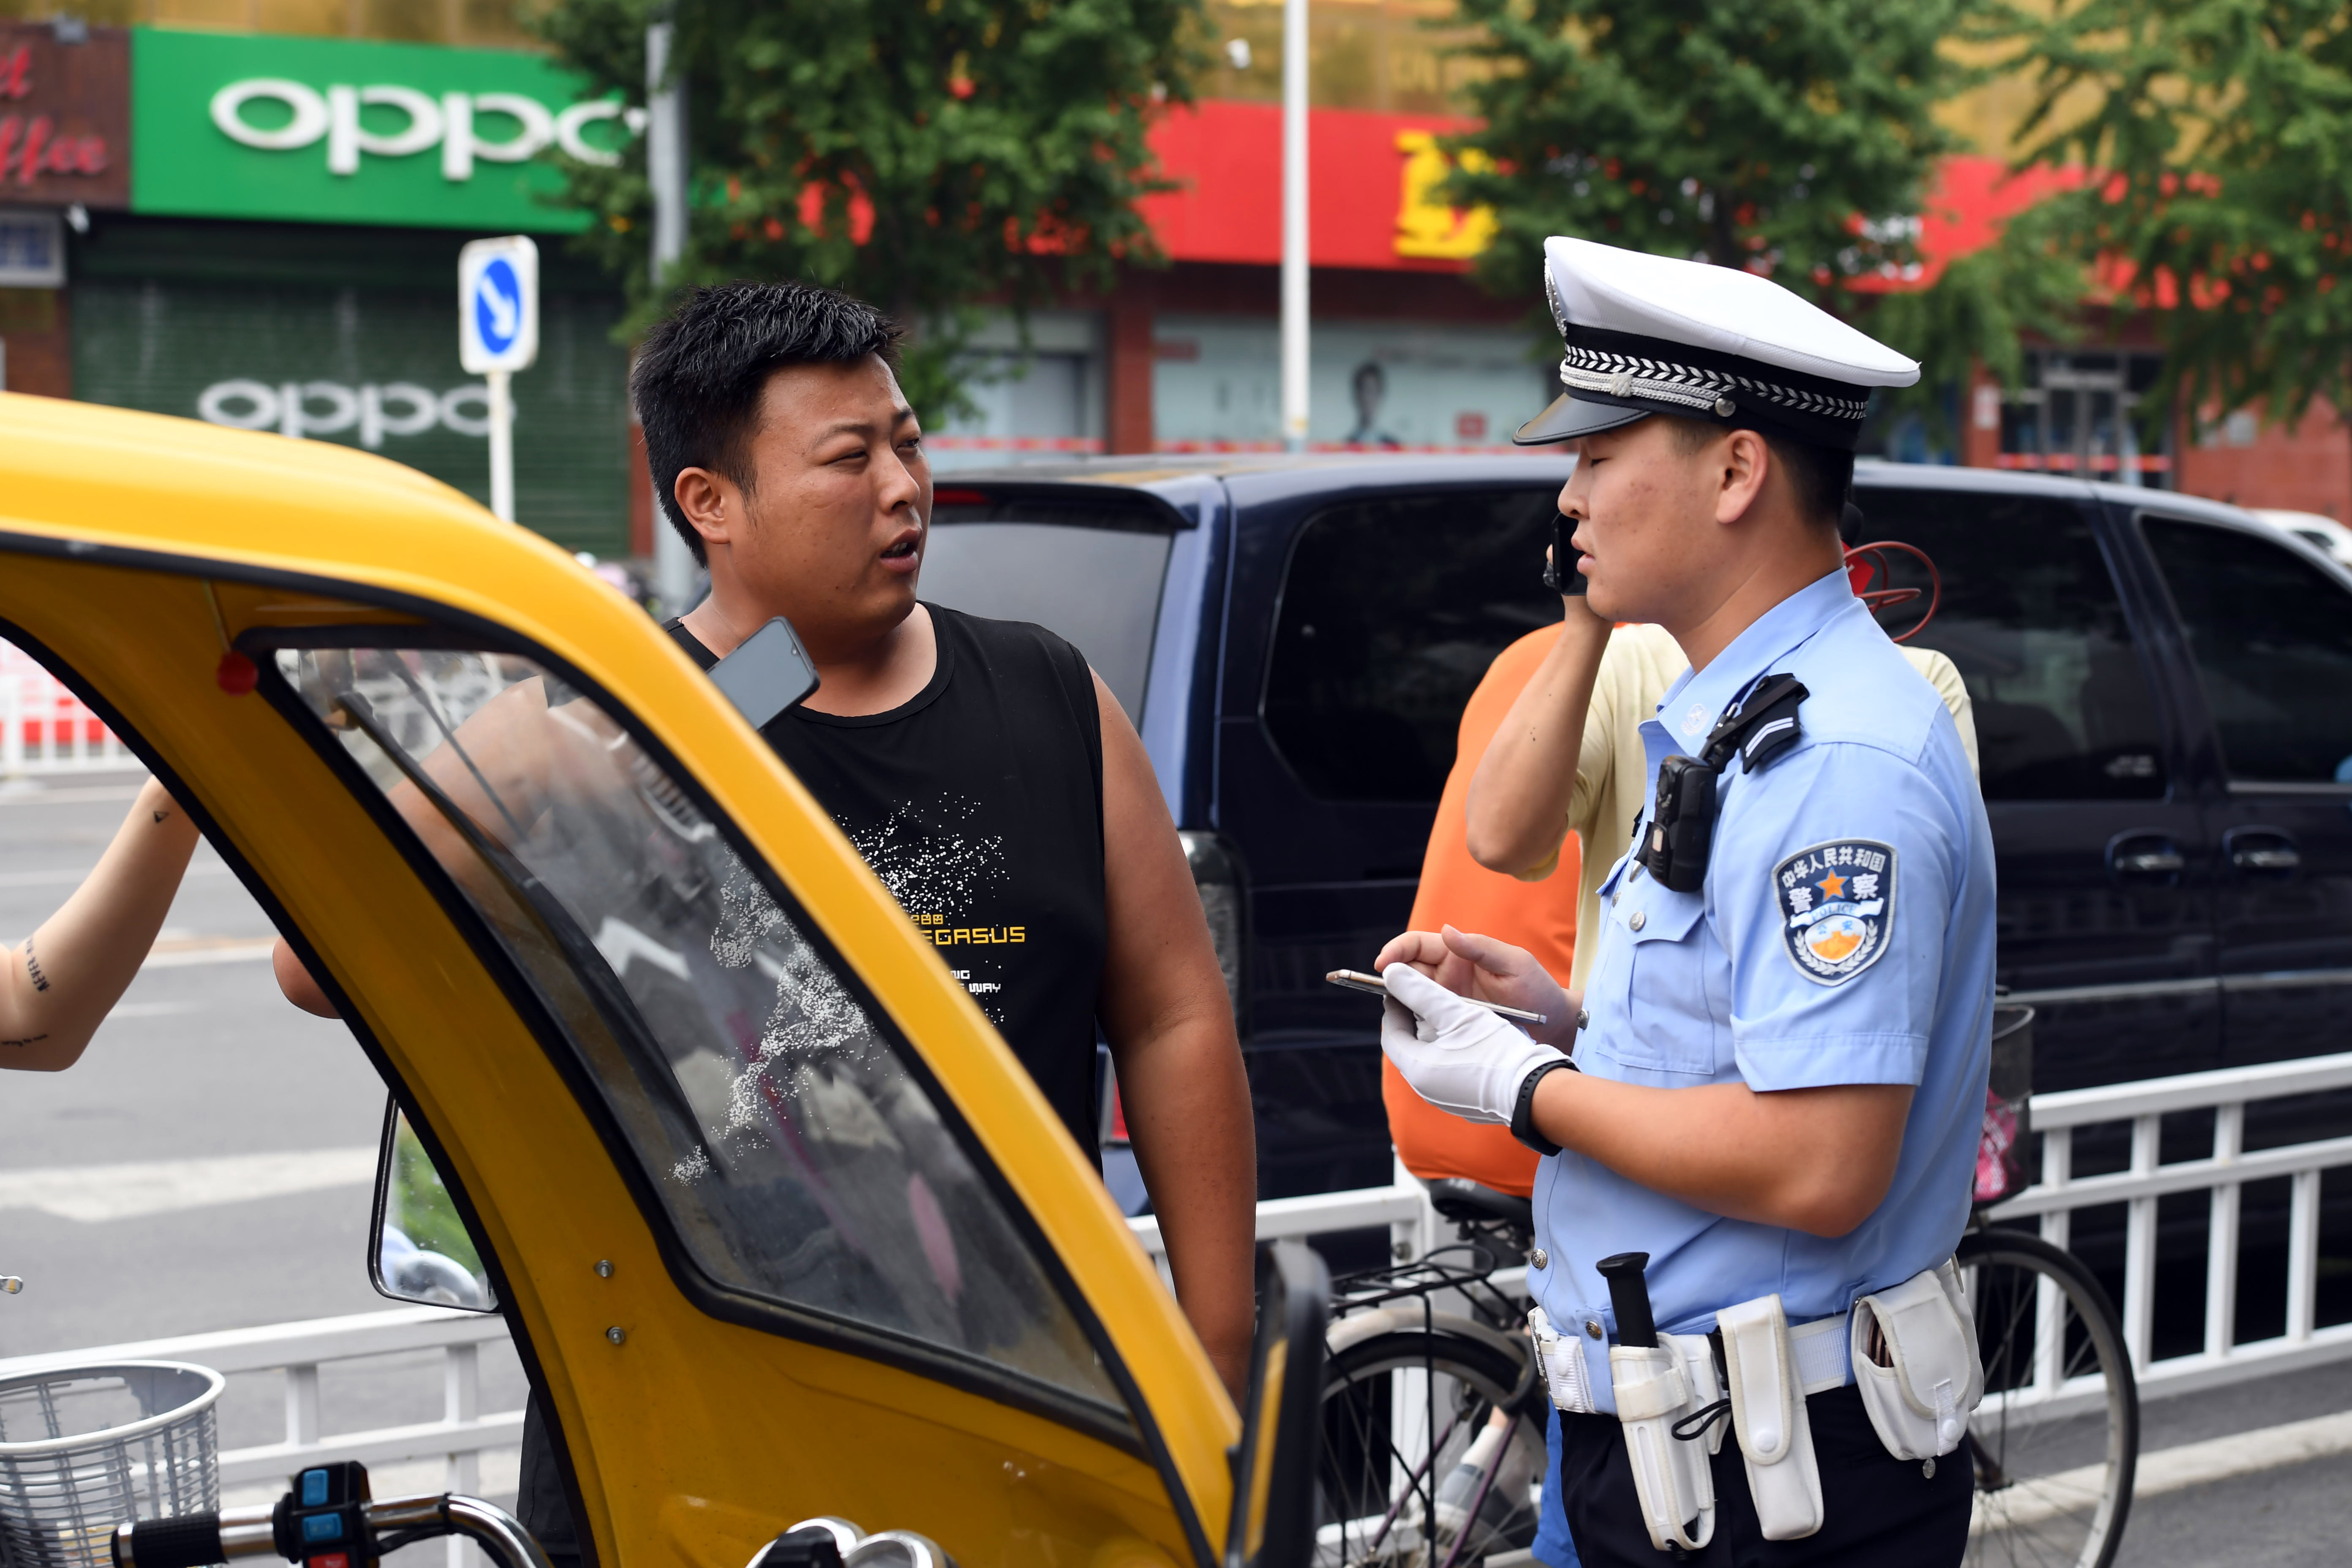 快递员,外卖小哥交通违法 北京交警将直接向企业通报